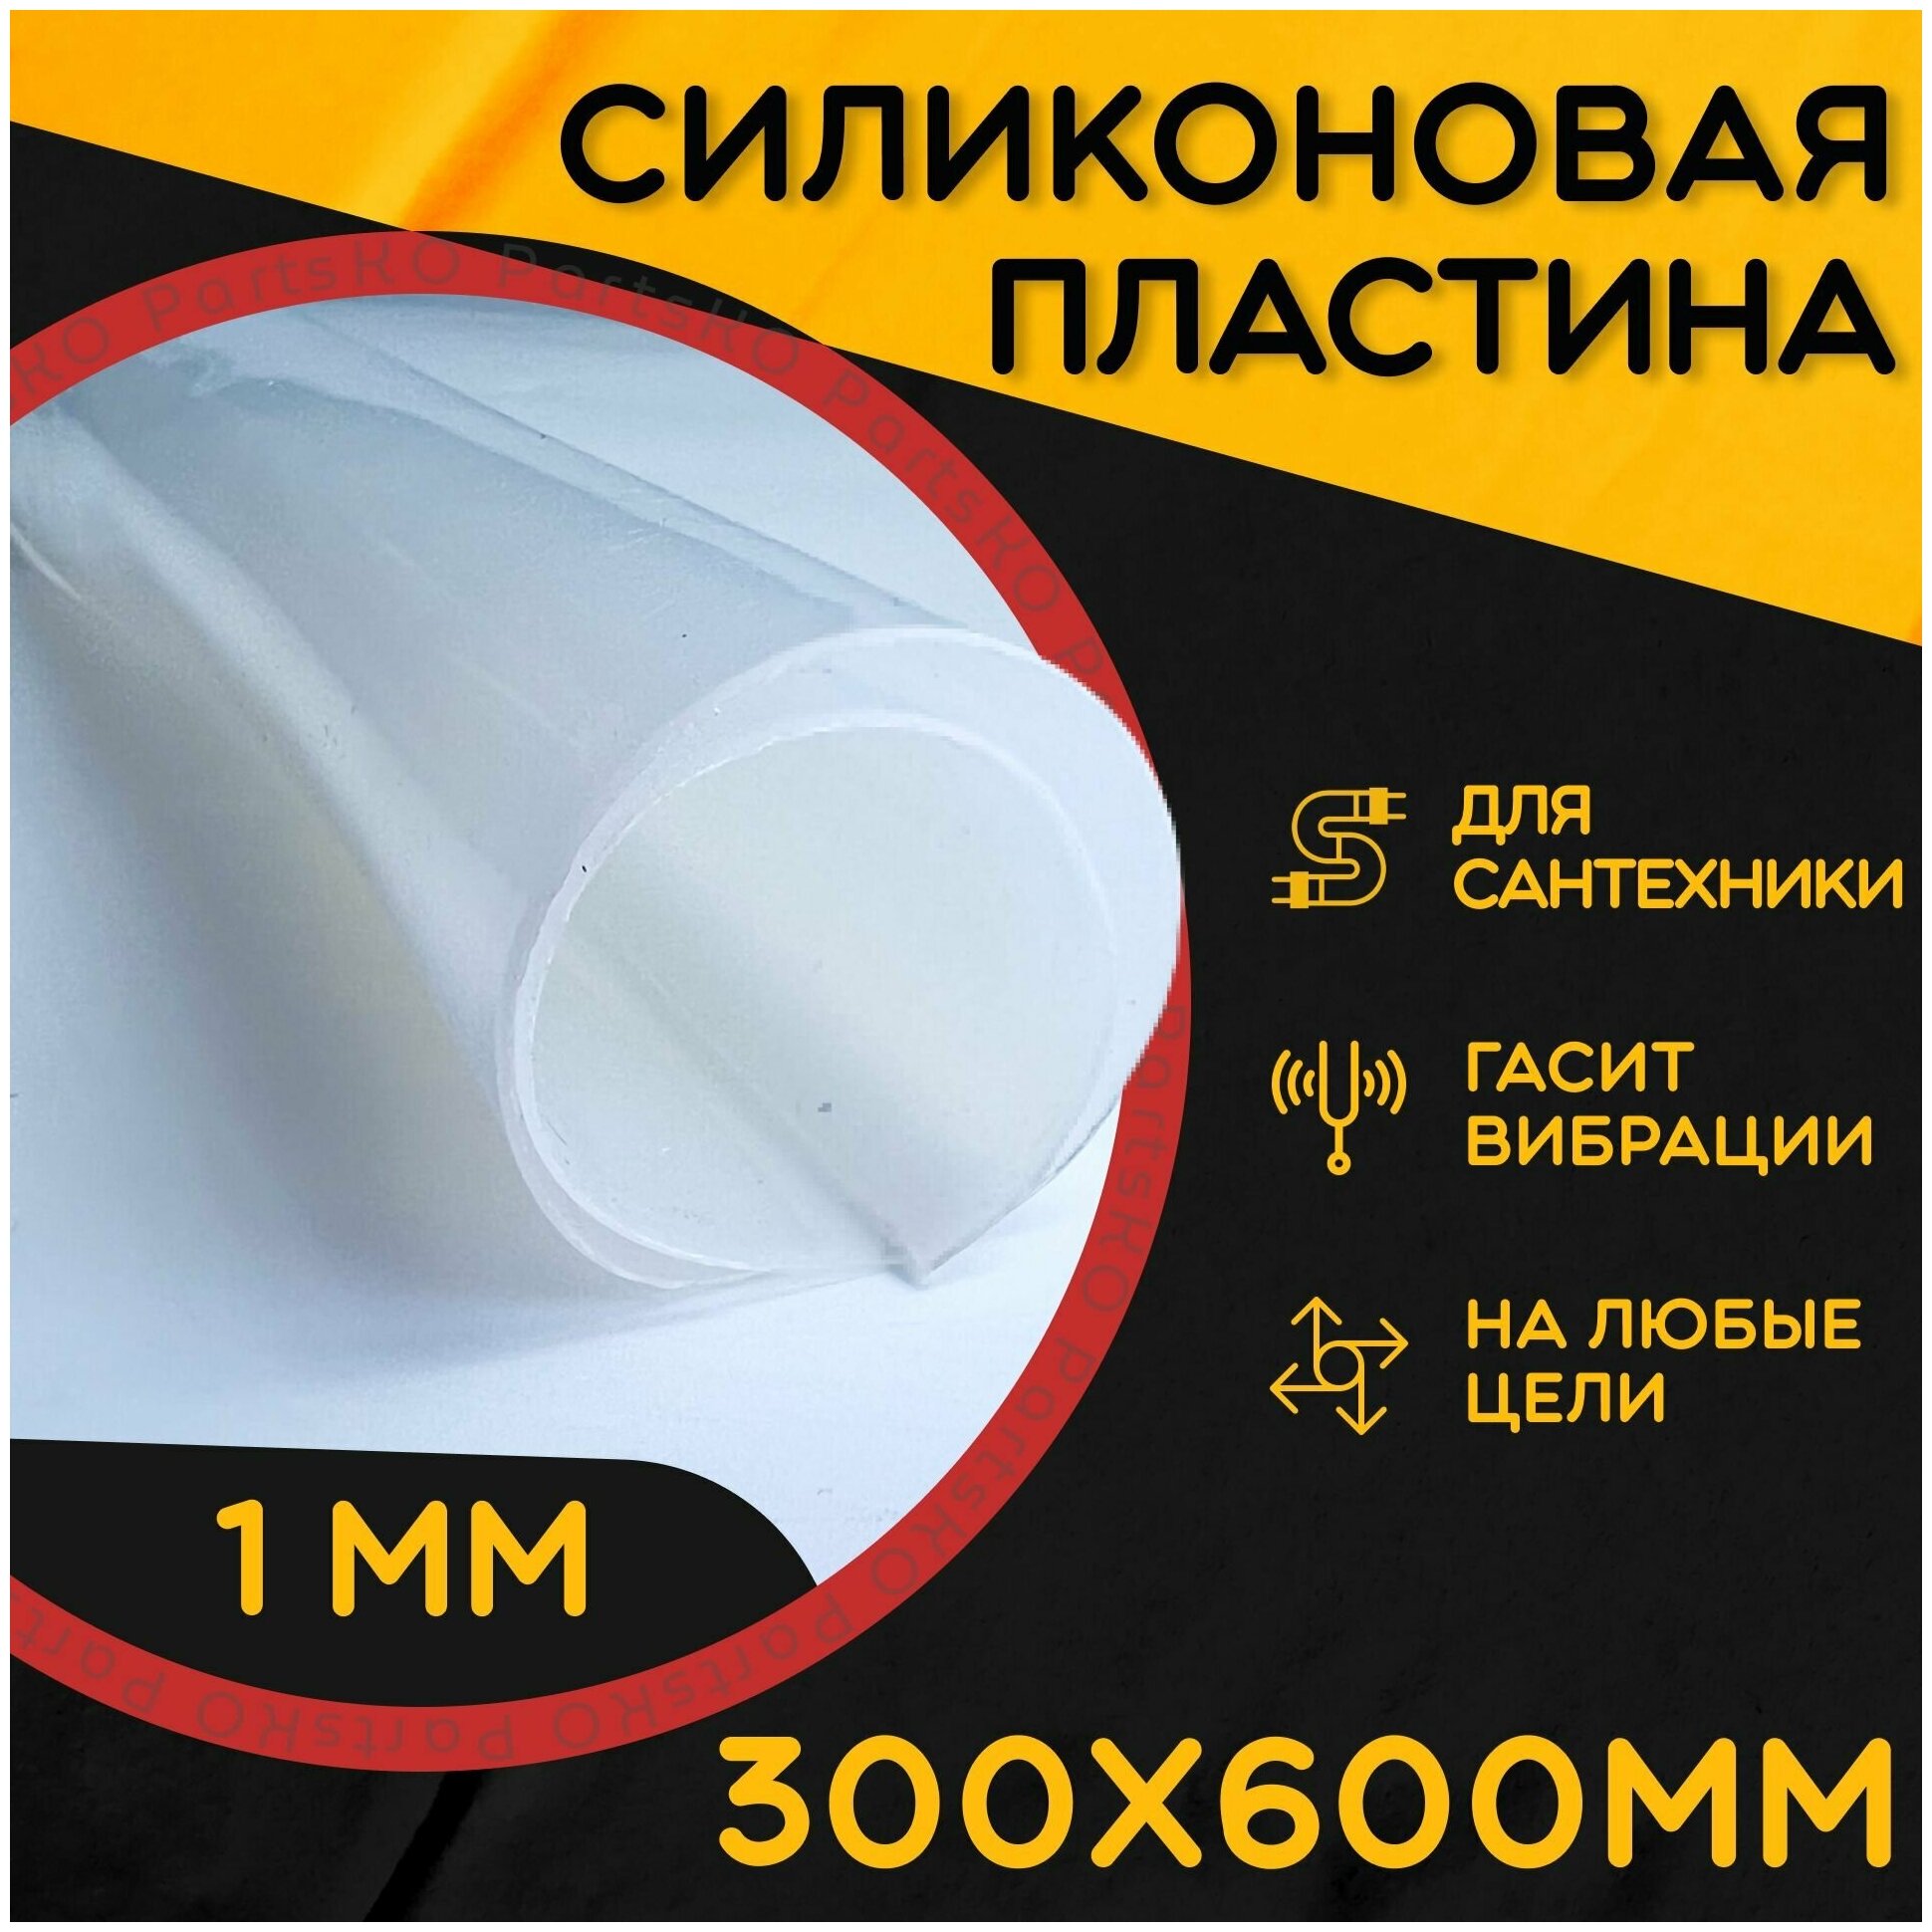 Силиконовая резина термостойкая. Толщина 1 мм. Размер 300х600 мм / Уплотнительная прокладка / Силиконовая пластина белого цвета.